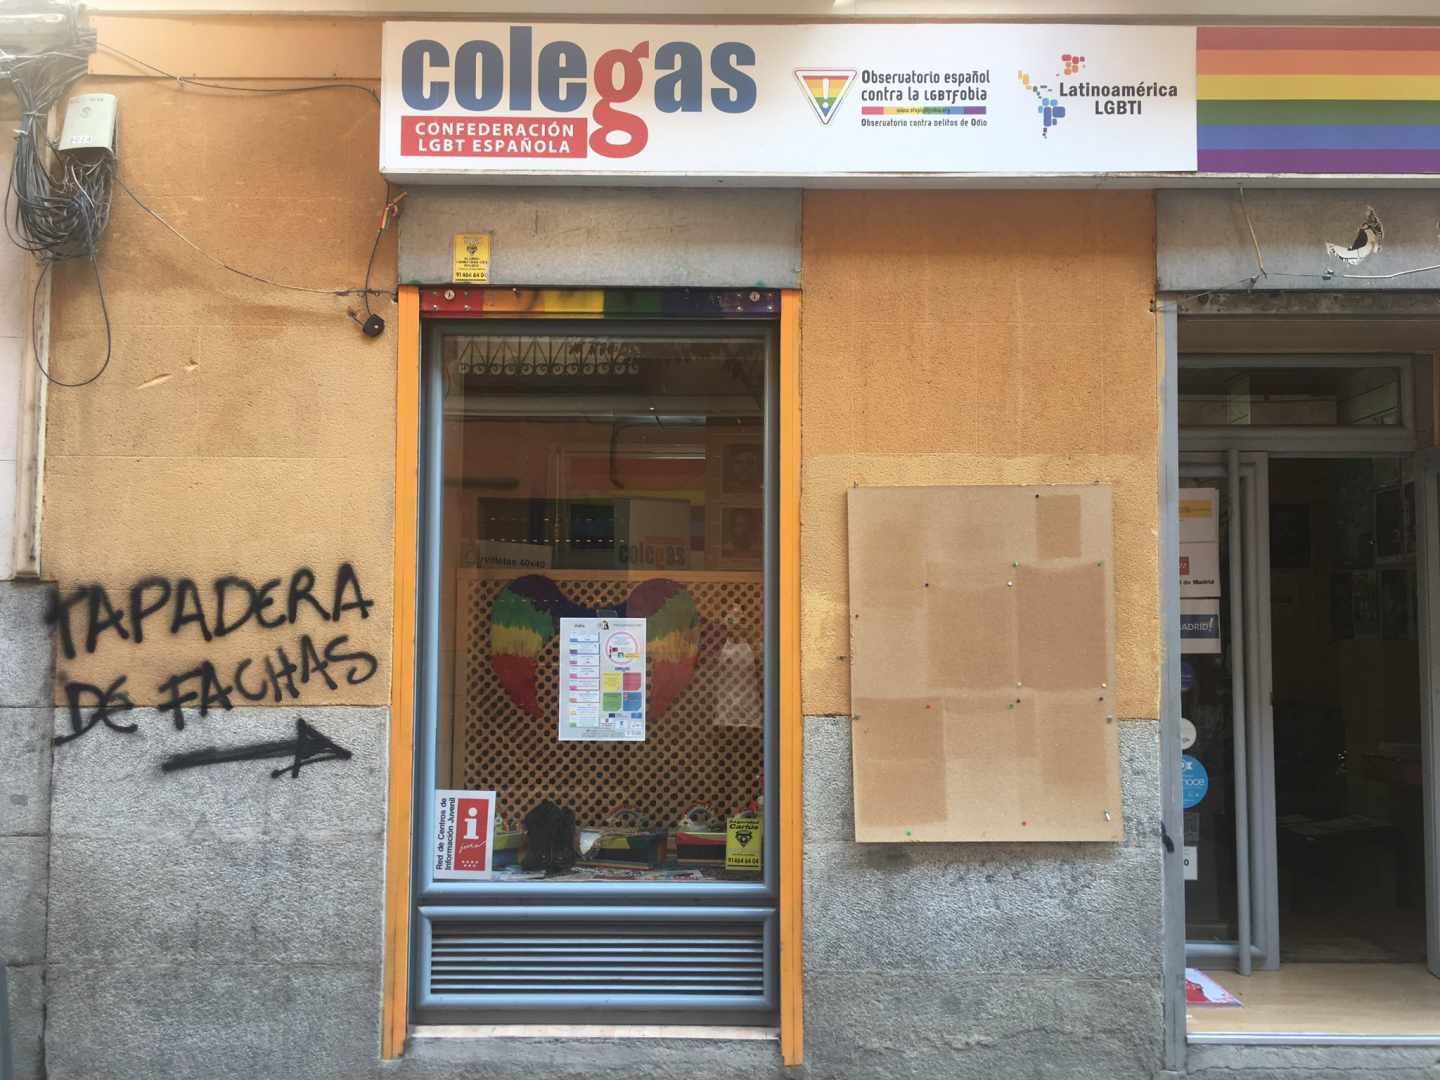 La sede de Colegas en Madrid ha aparecido con la pintada "Tapadera de fachas"